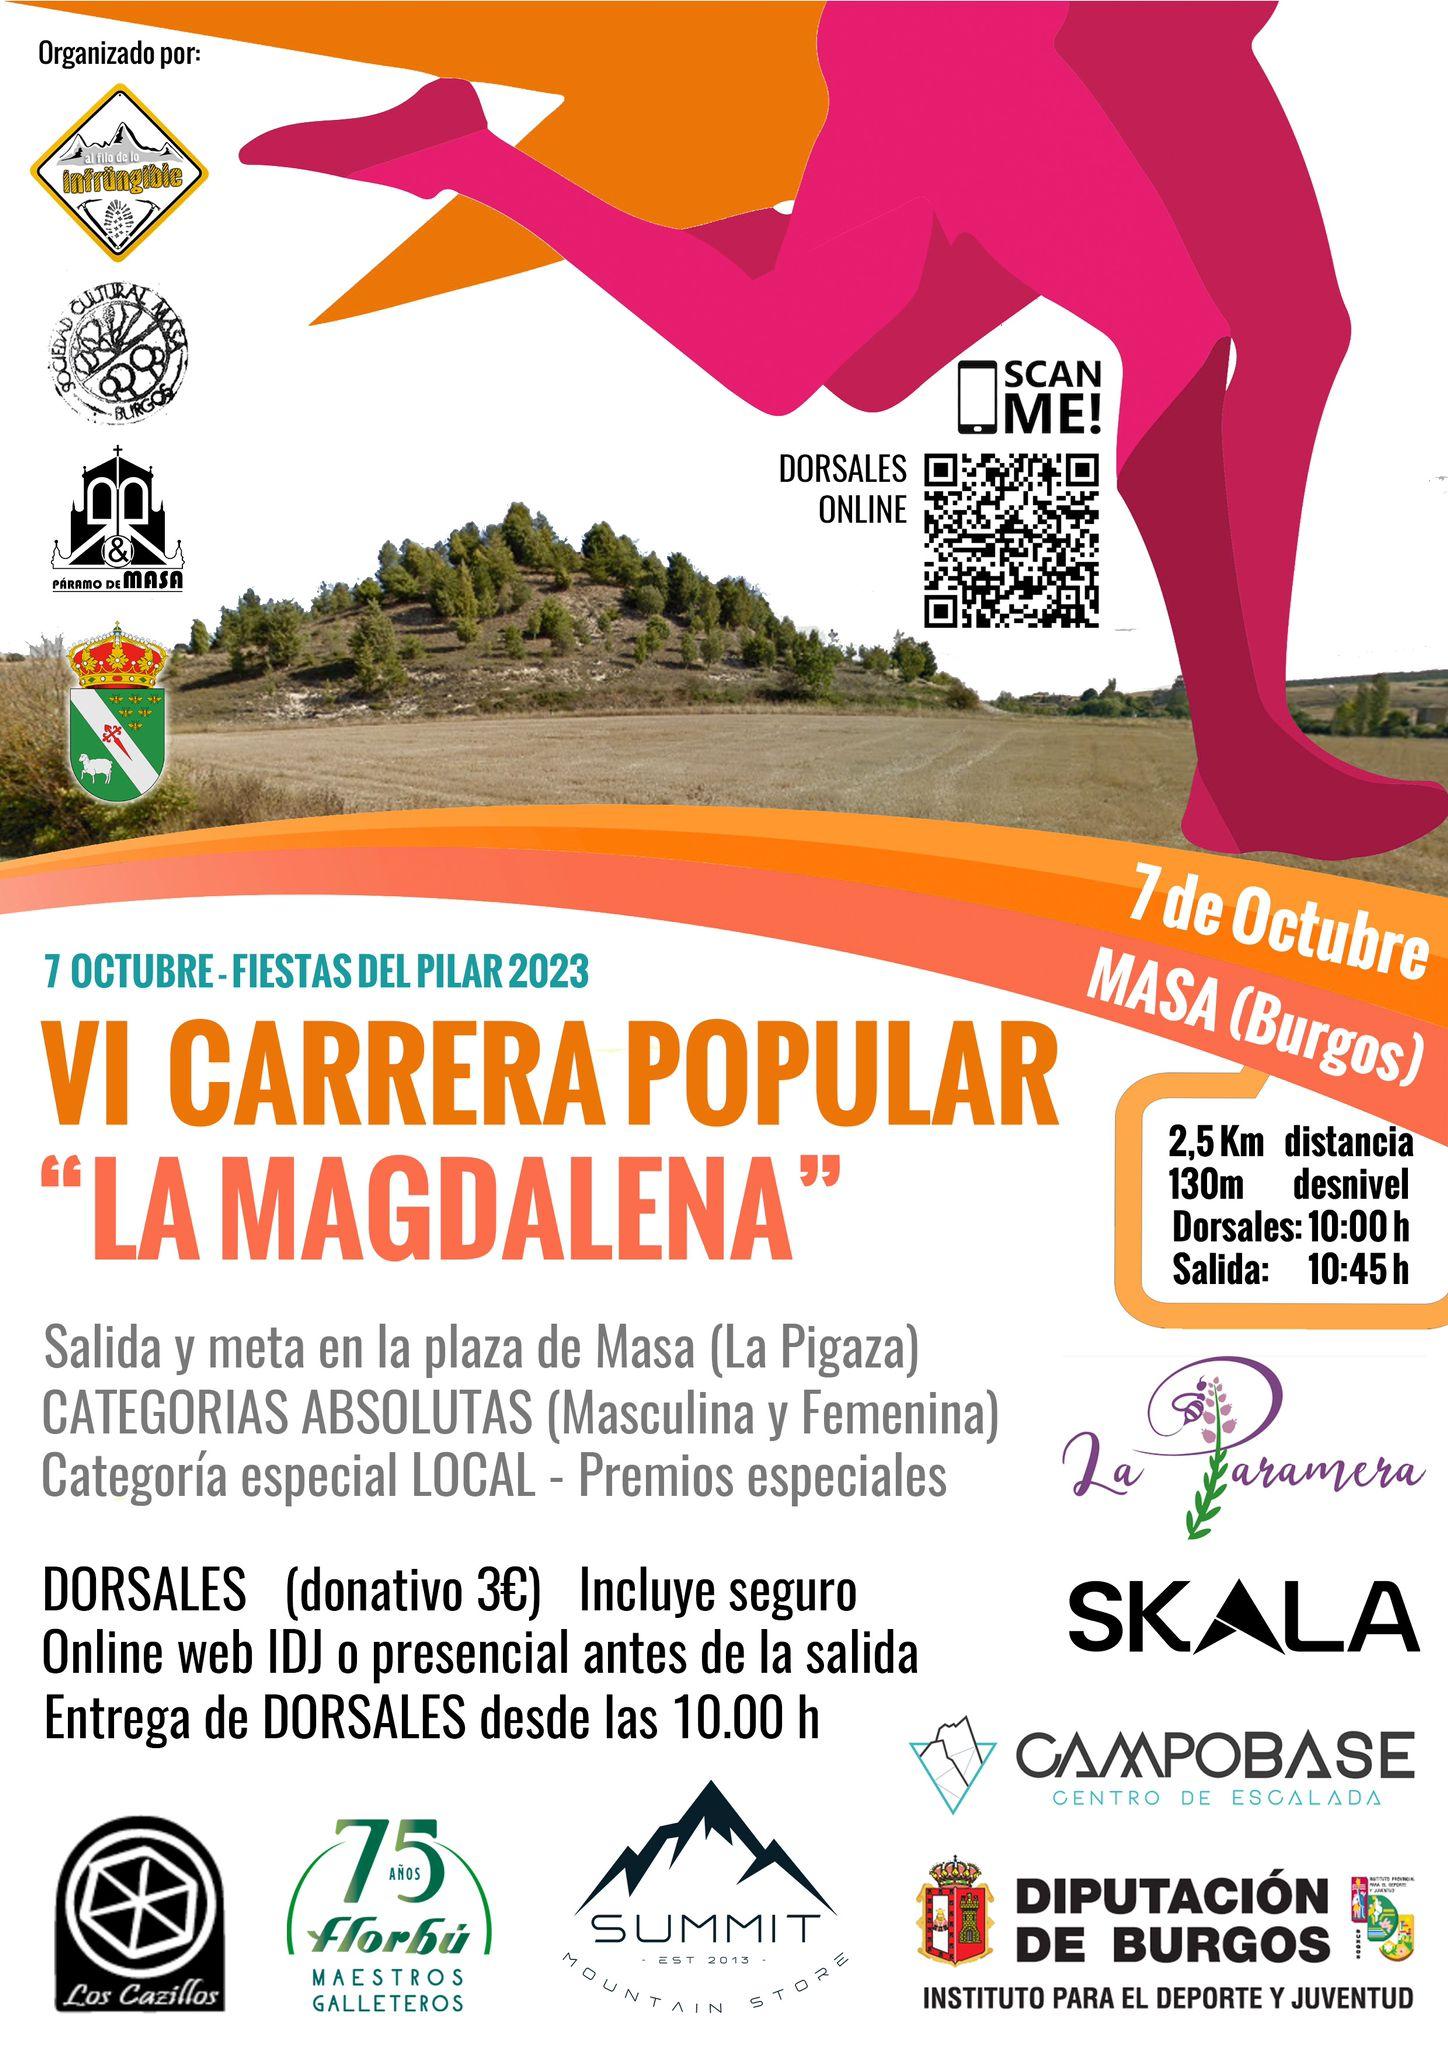 Carrera popular "La Magdalena"